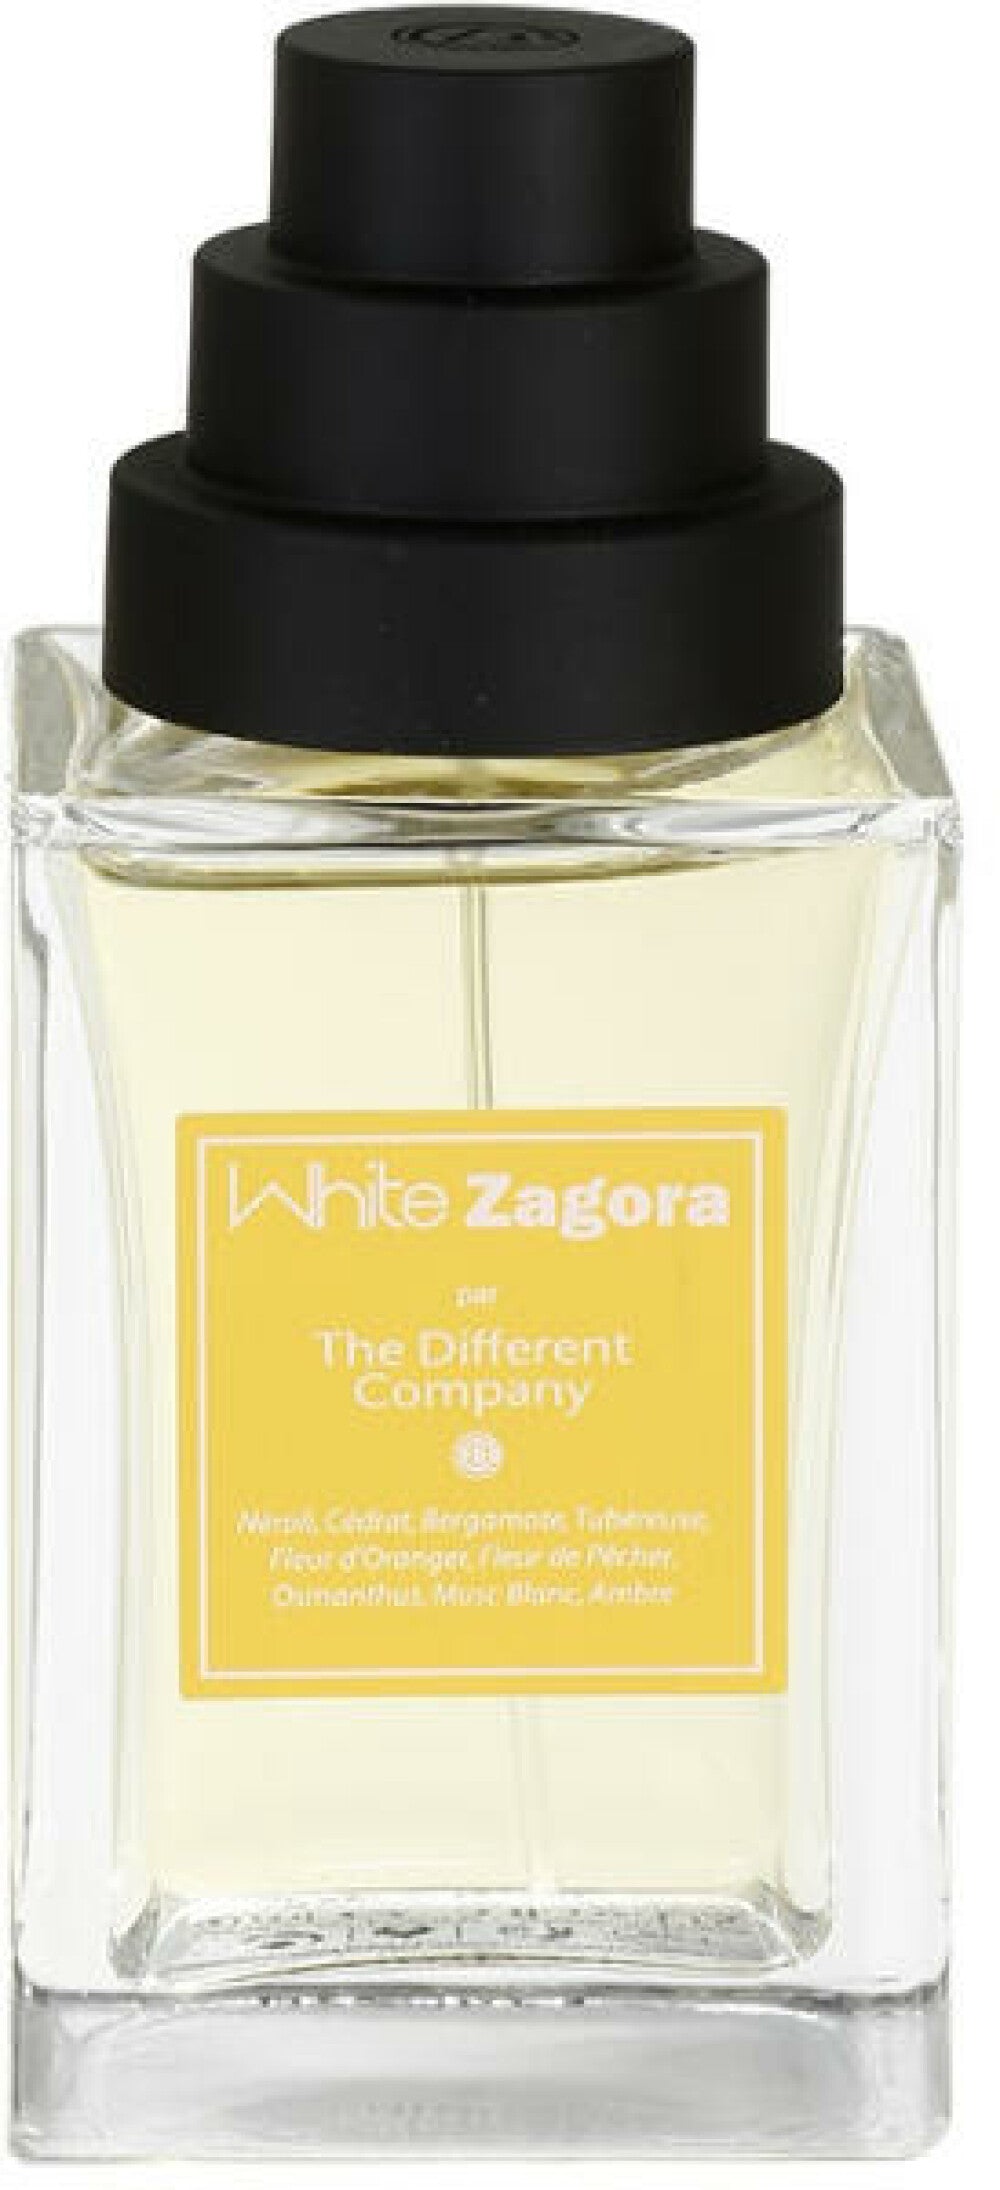 The Different Company, White Zagora, Eau De Cologne, For Women, 100 ml